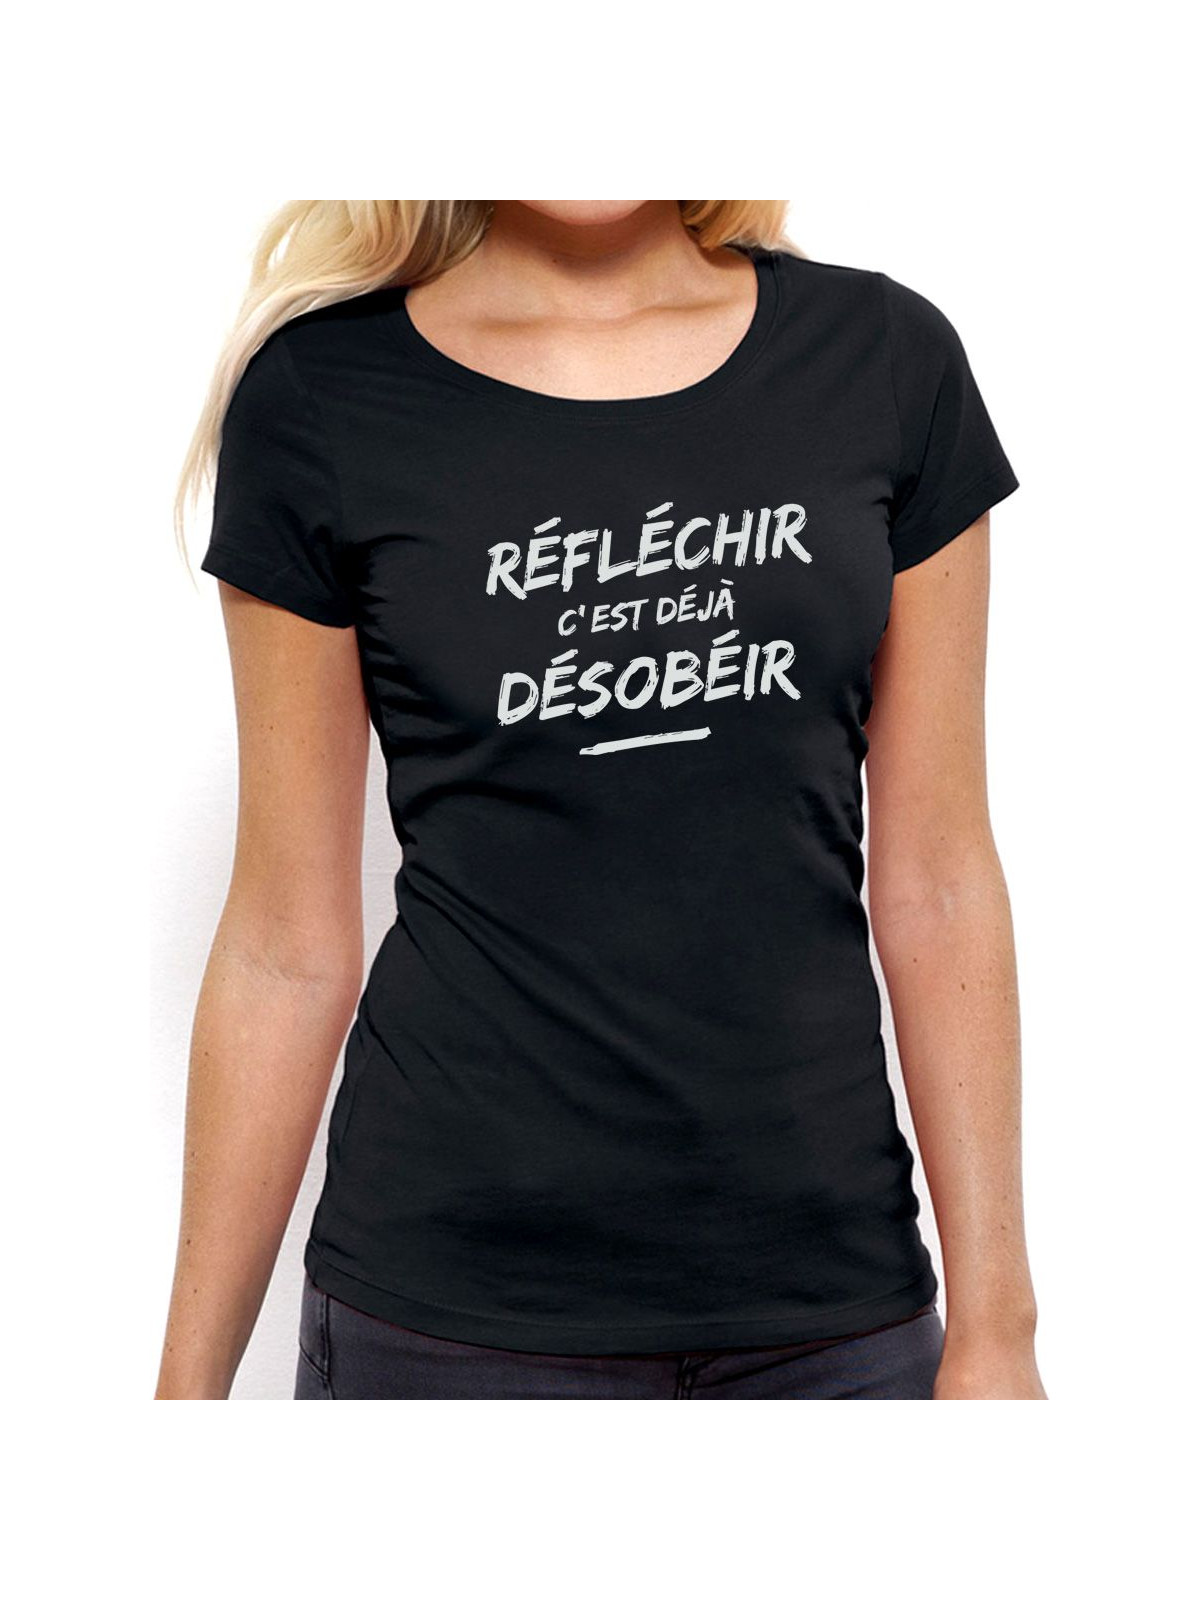 T-shirt femme "Reflechir"